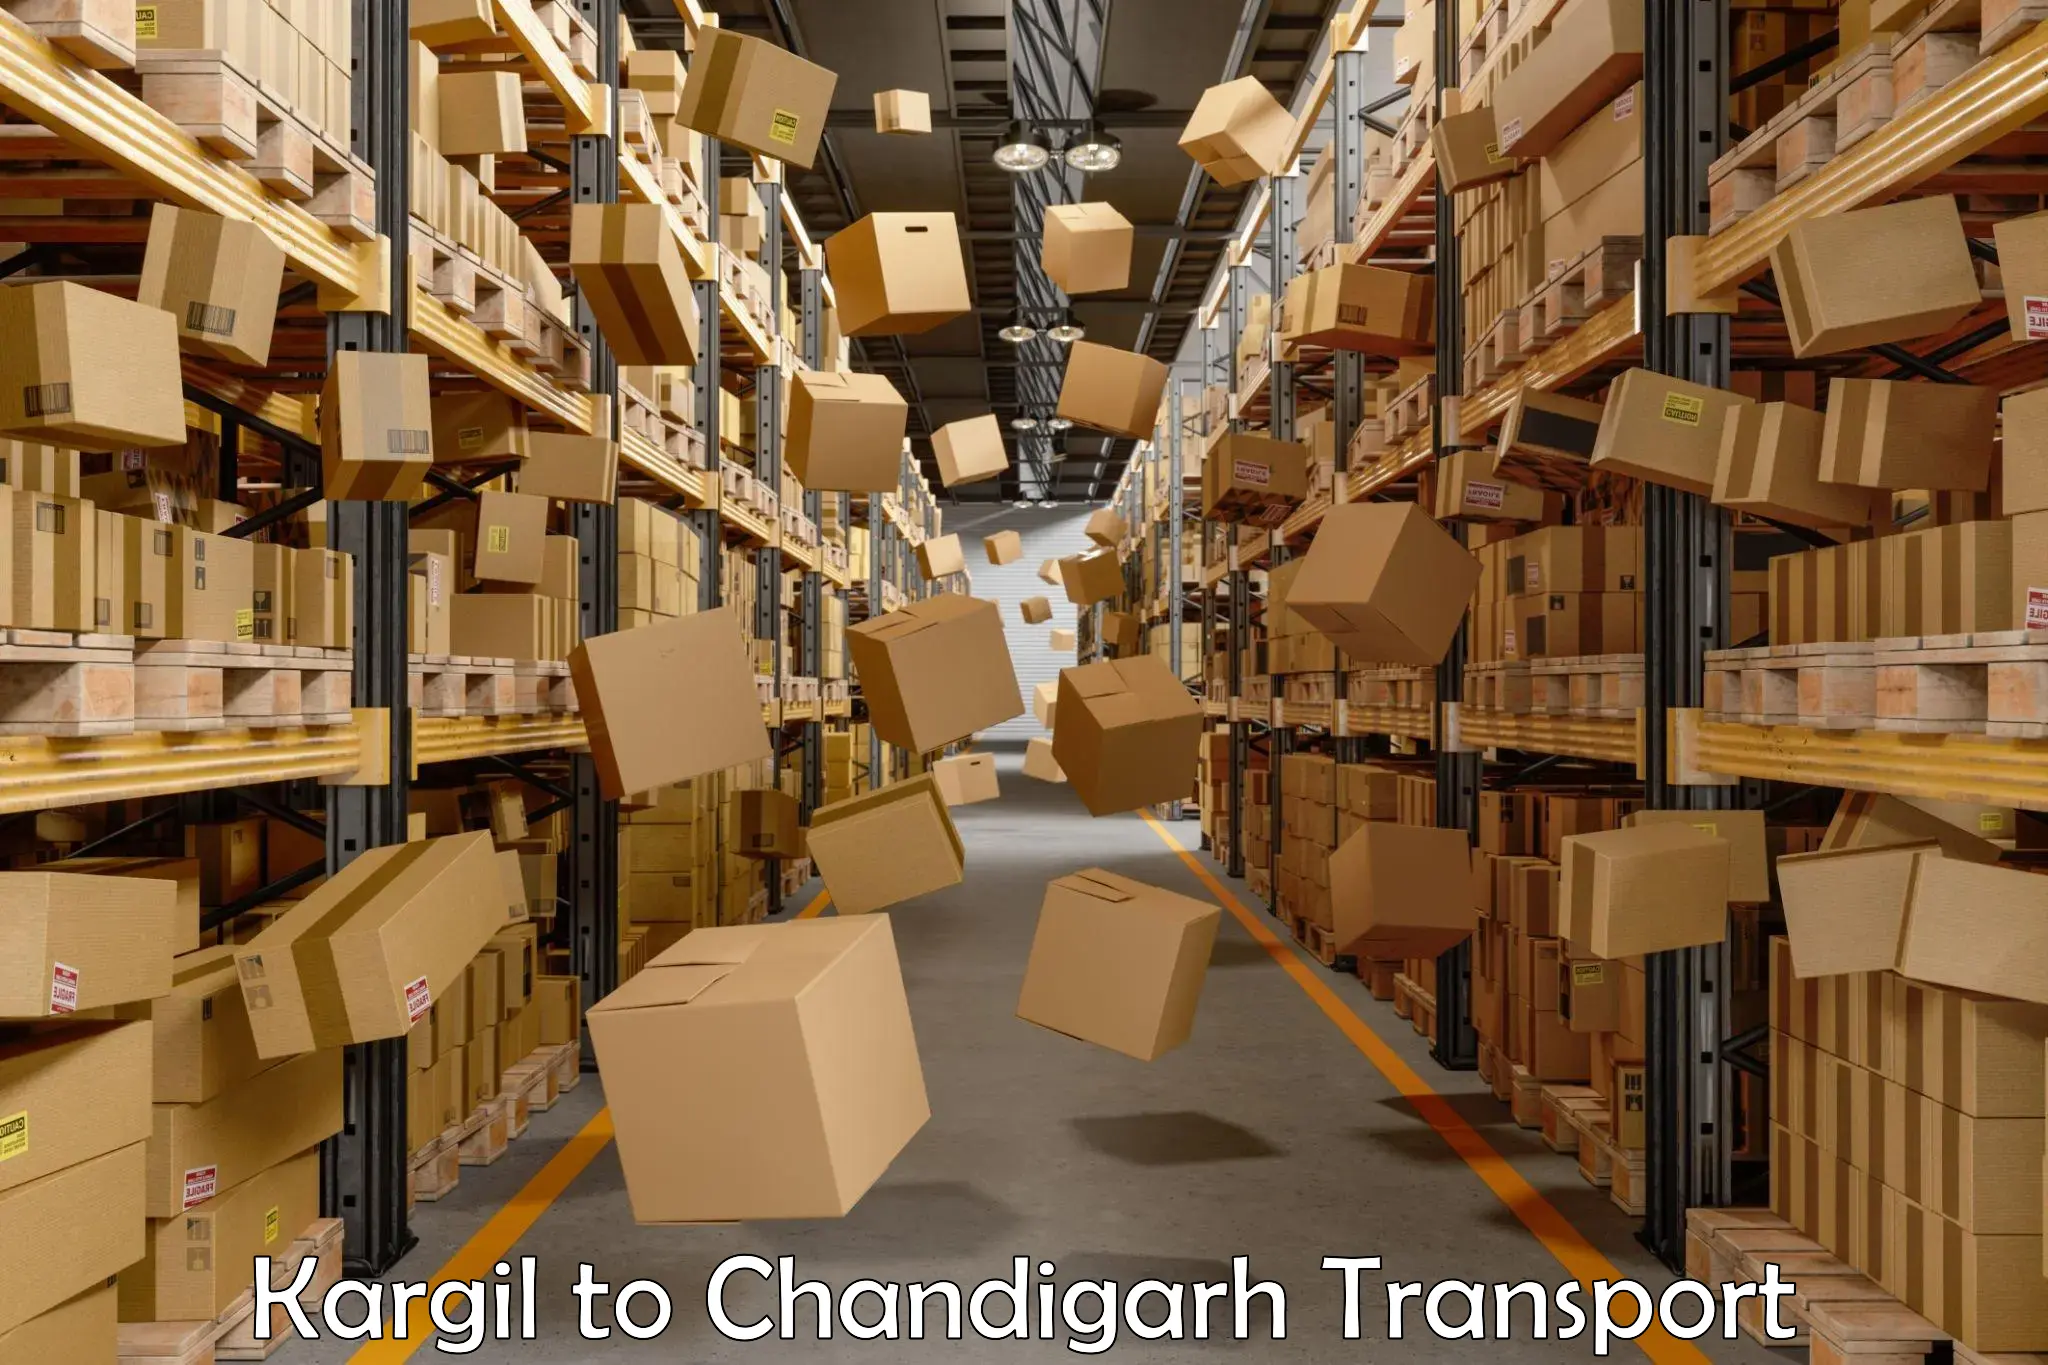 Online transport service Kargil to Chandigarh